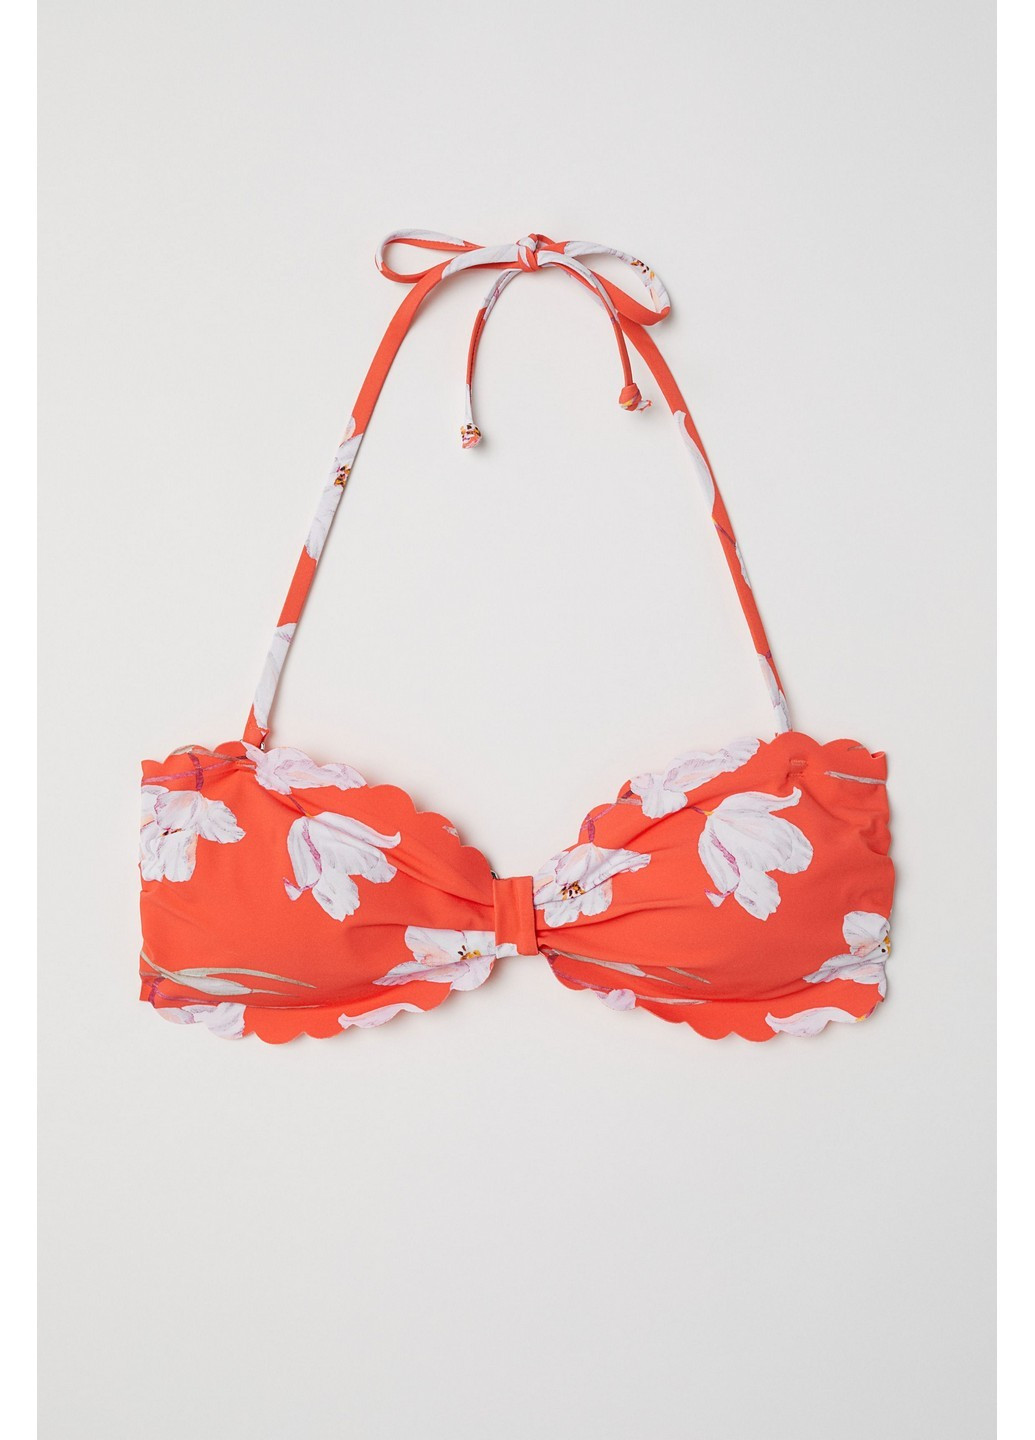 Купальный бюст H&M цветочный оранжевый пляжный